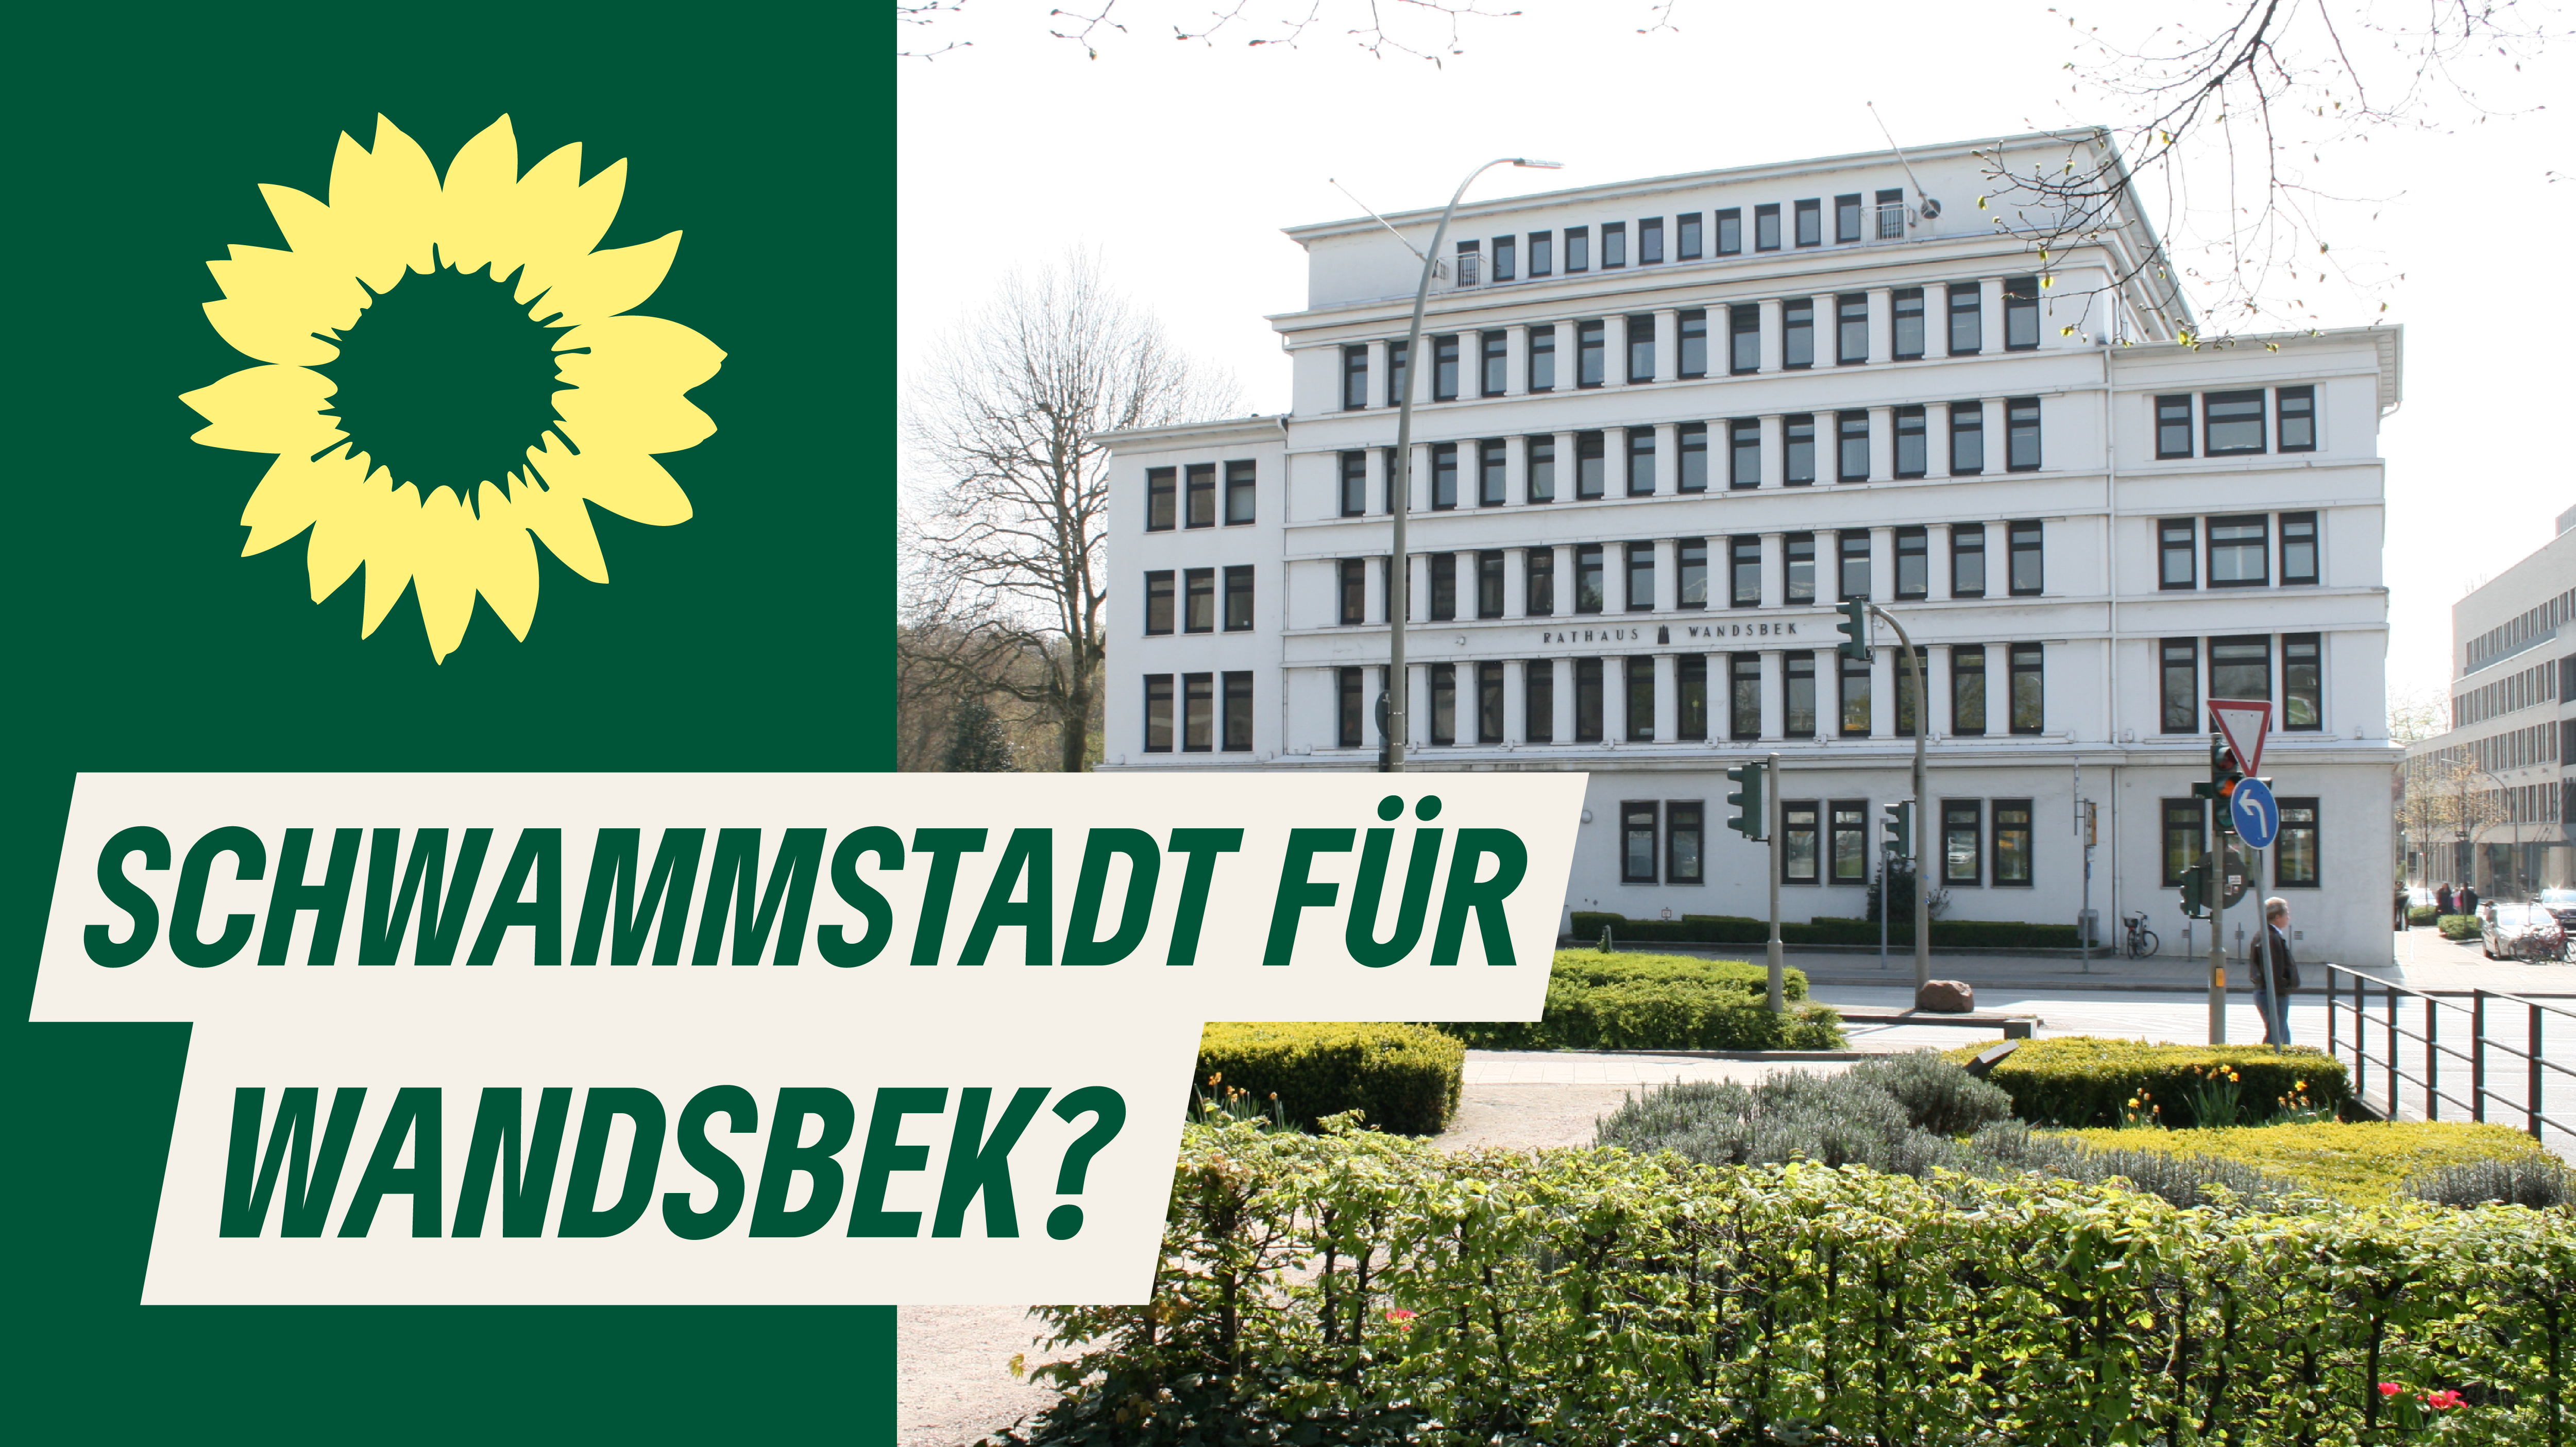 Bild vom Rathaus Wandsbek mit Titel "Schwammstadt für Wandsbek?" und Sonnenblumen-Logo von BÜNDNIS90/DIEGRÜNEN